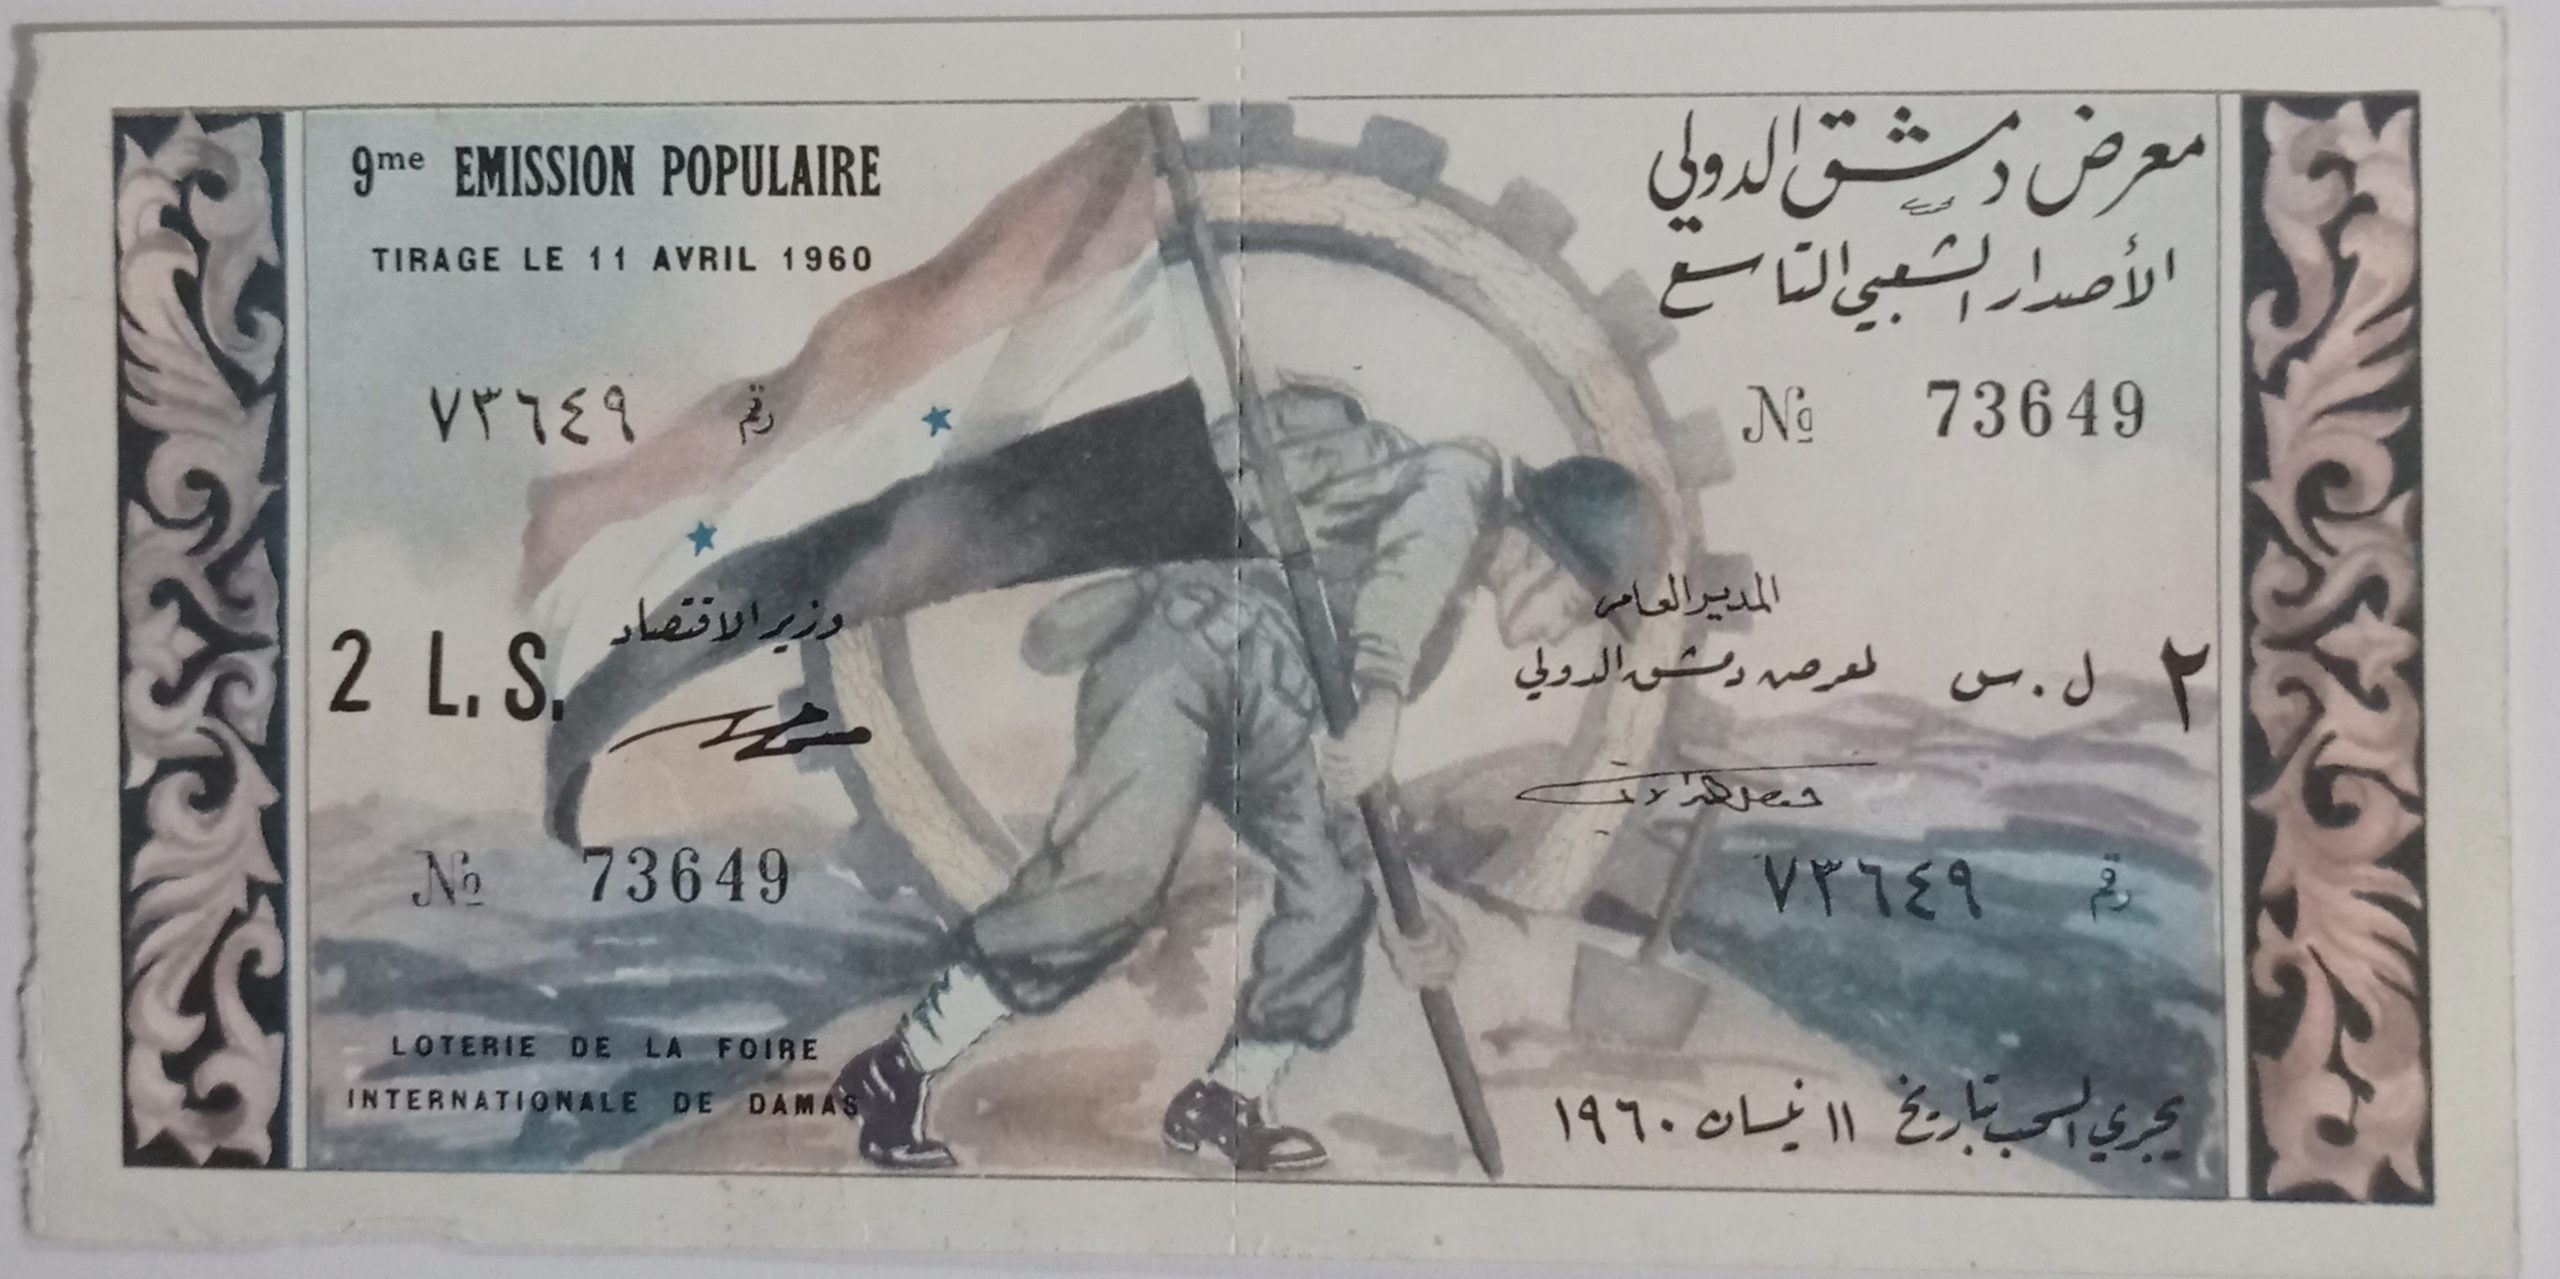 التاريخ السوري المعاصر - يانصيب معرض دمشق الدولي - الإصدار الشعبي التاسع عام 1960